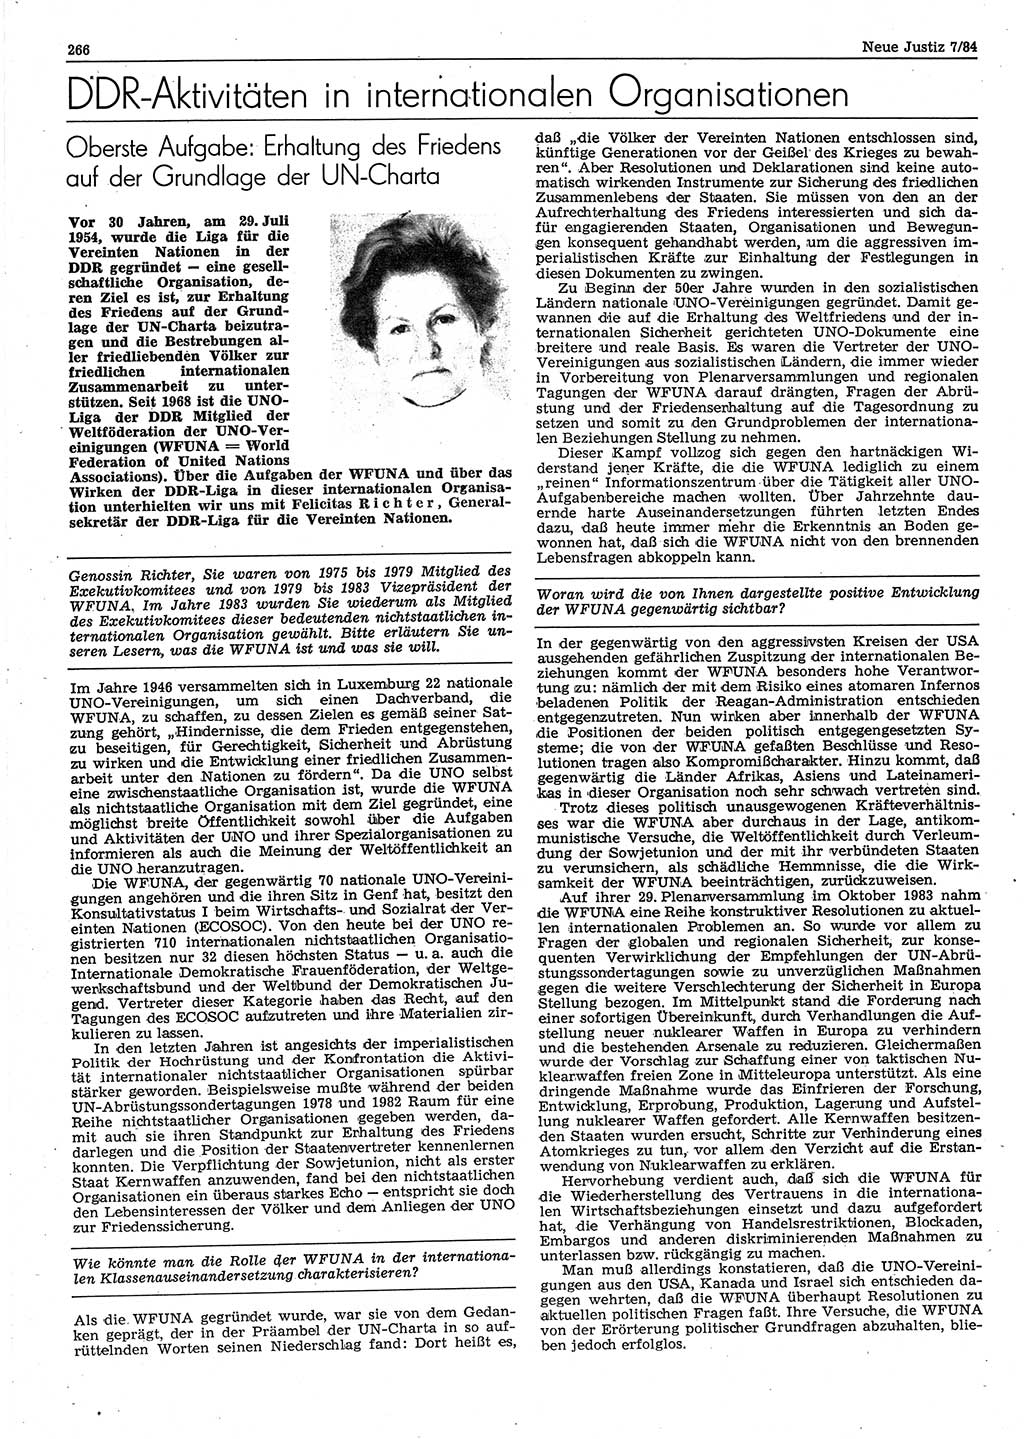 Neue Justiz (NJ), Zeitschrift für sozialistisches Recht und Gesetzlichkeit [Deutsche Demokratische Republik (DDR)], 38. Jahrgang 1984, Seite 266 (NJ DDR 1984, S. 266)